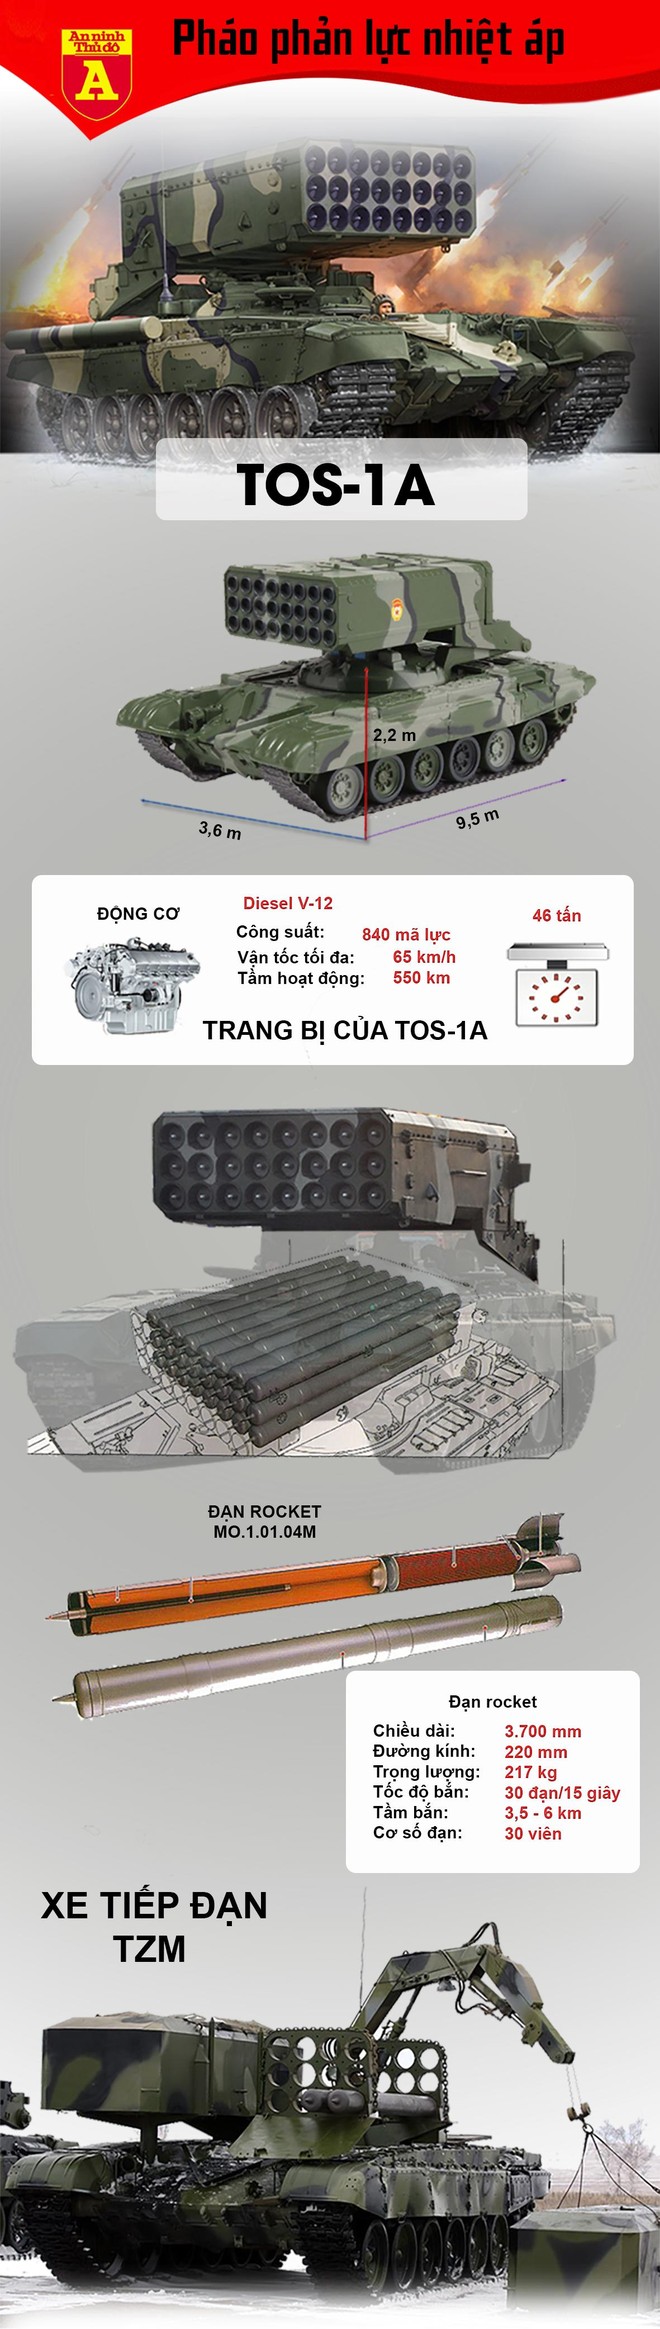 Ly khai sẽ sử dụng 'hỏa thần nhiệt áp' TOS-1A đối phó Ukraine? ảnh 2